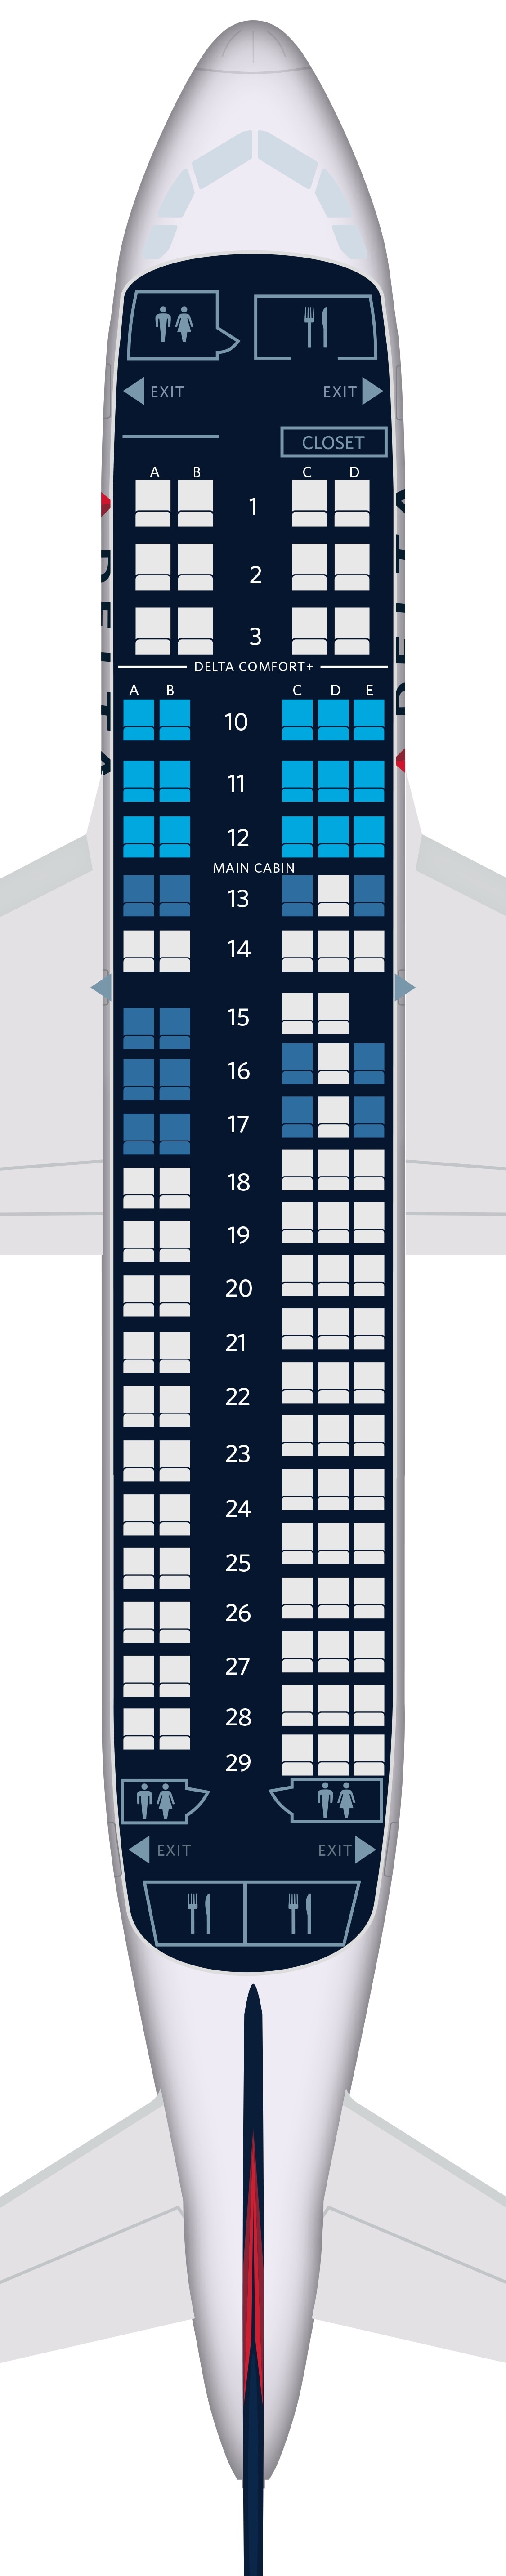 Boeing 777 200er Aircraft Seat Maps Specs Amenities D - vrogue.co